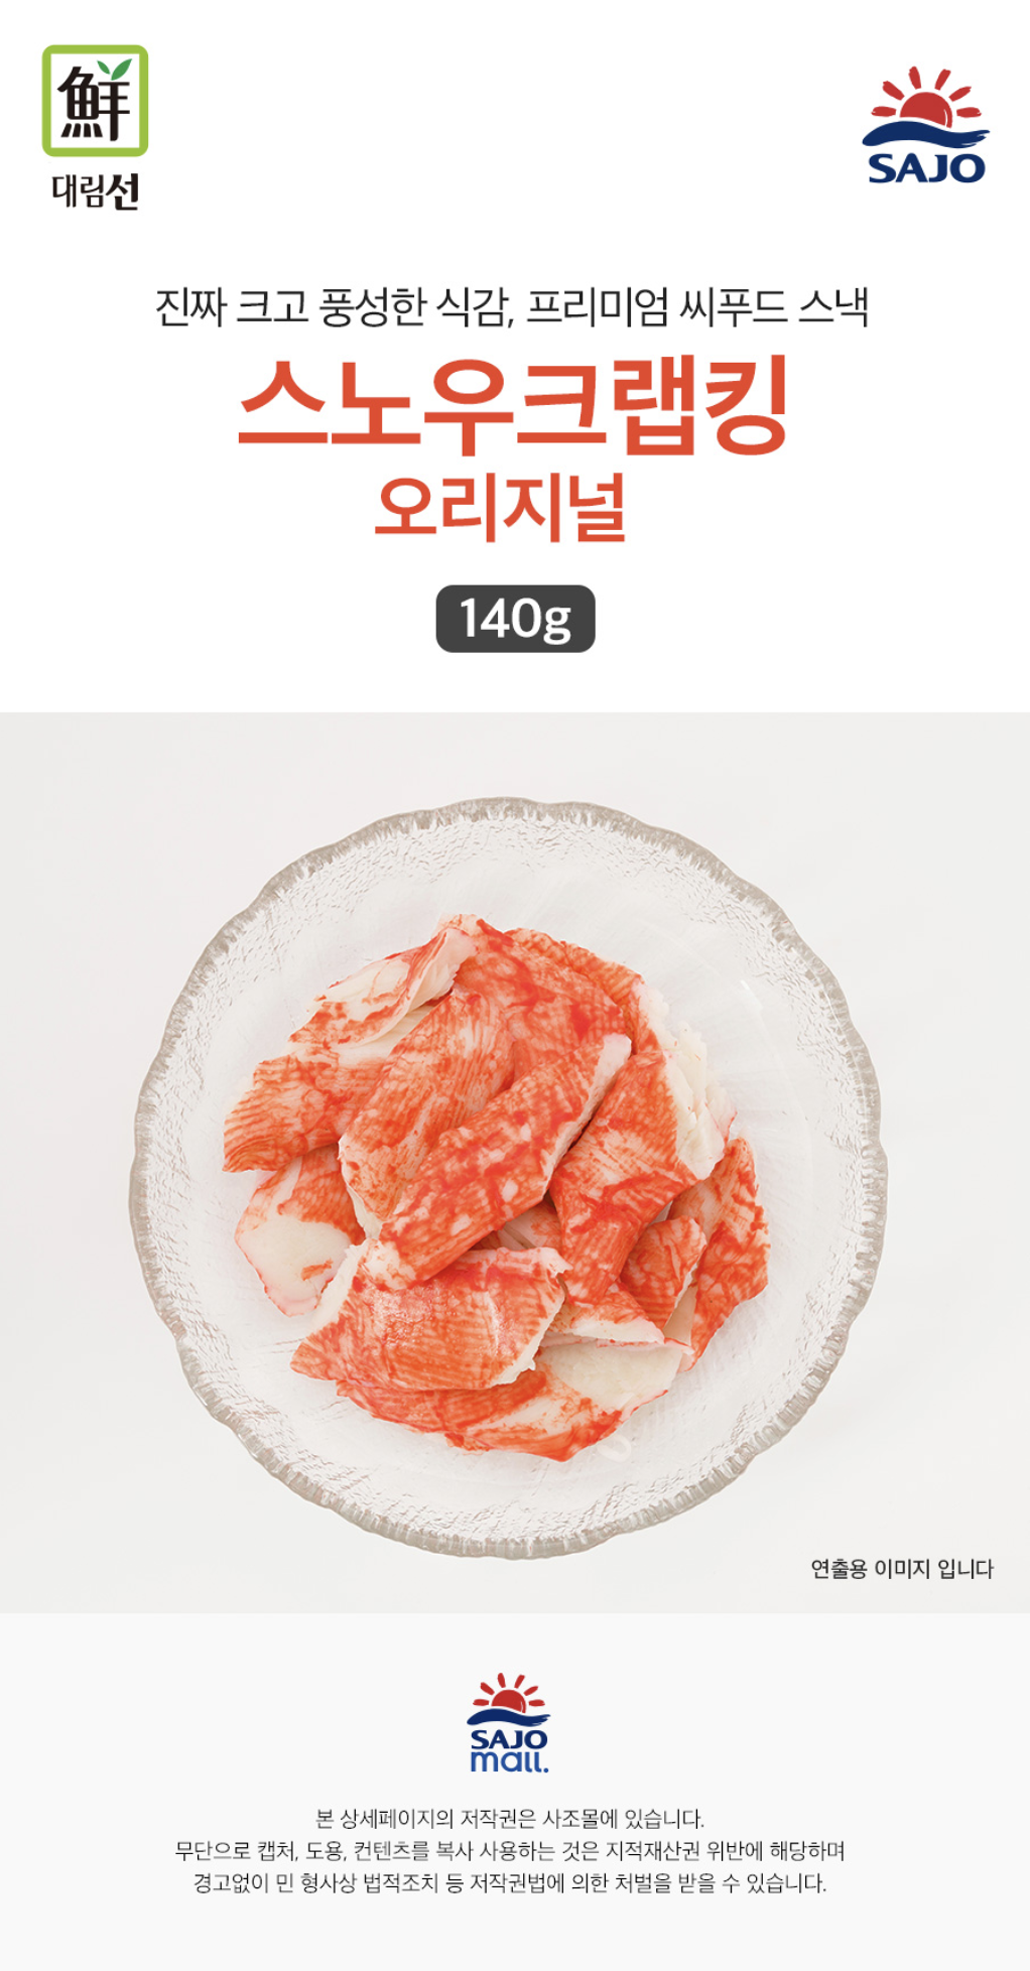 韓國食品-[사조대림] 스노우크랩킹 140g